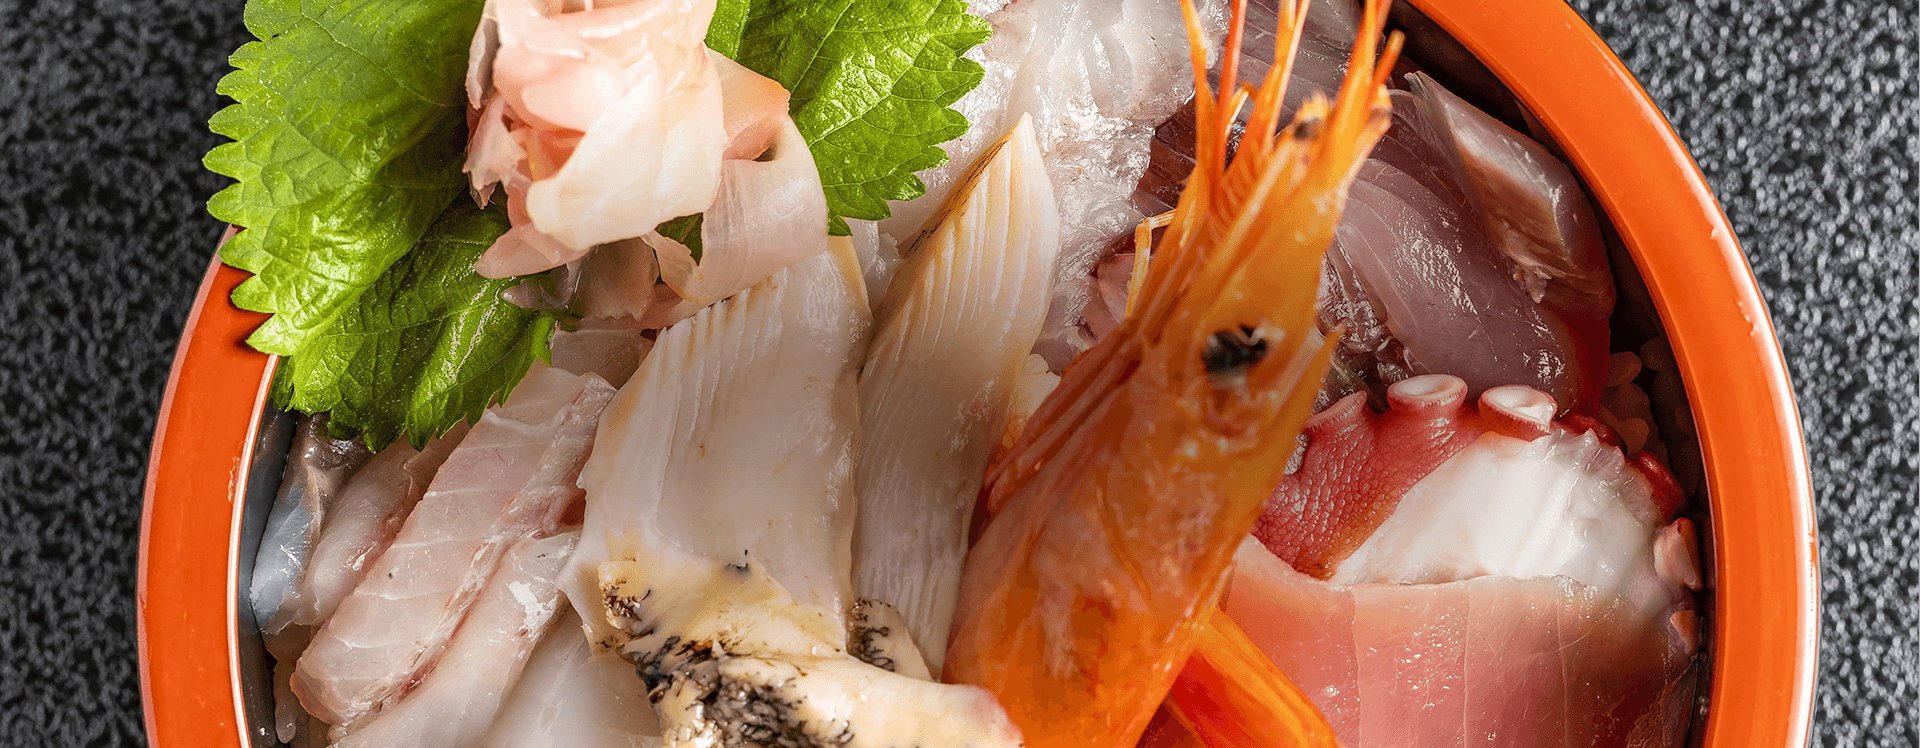 大津漁港より店主自ら買い付ける、新鮮な地魚が食べられる海鮮料理の和食店